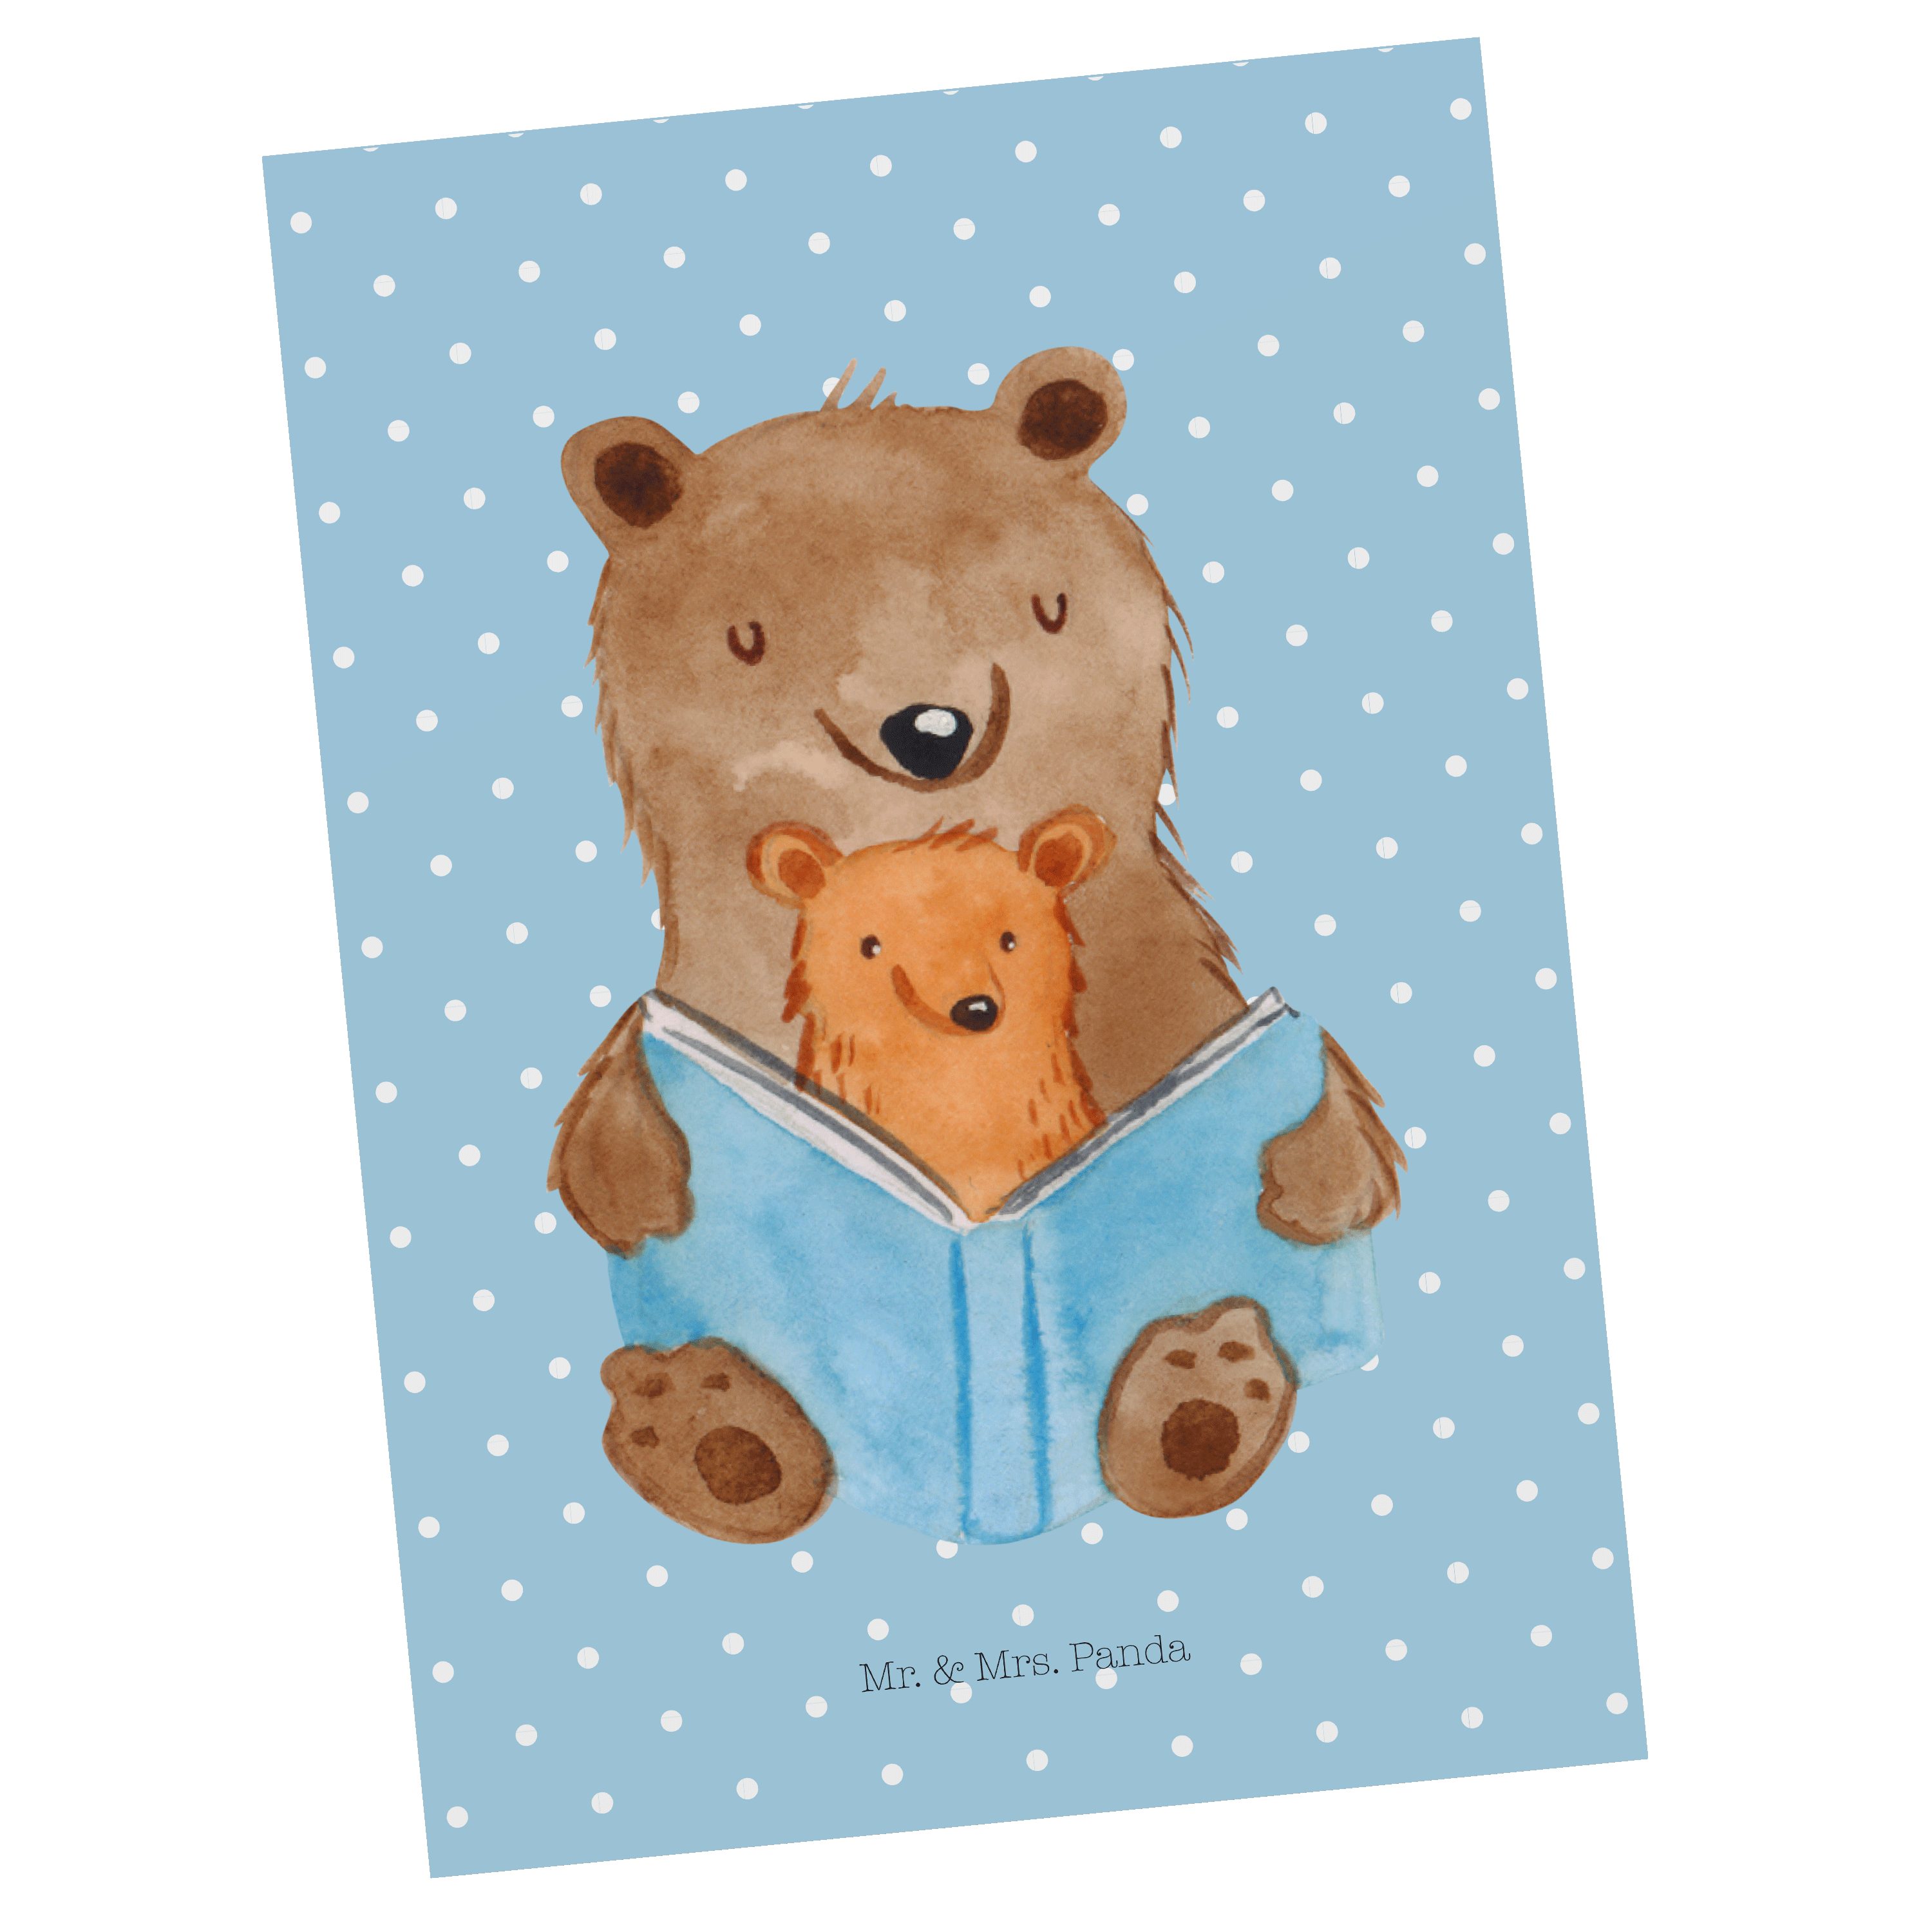 Mr. & Mrs. Panda Postkarte Bären Buch - Blau Pastell - Geschenk, Einladung, Dankeskarte, Mama, G